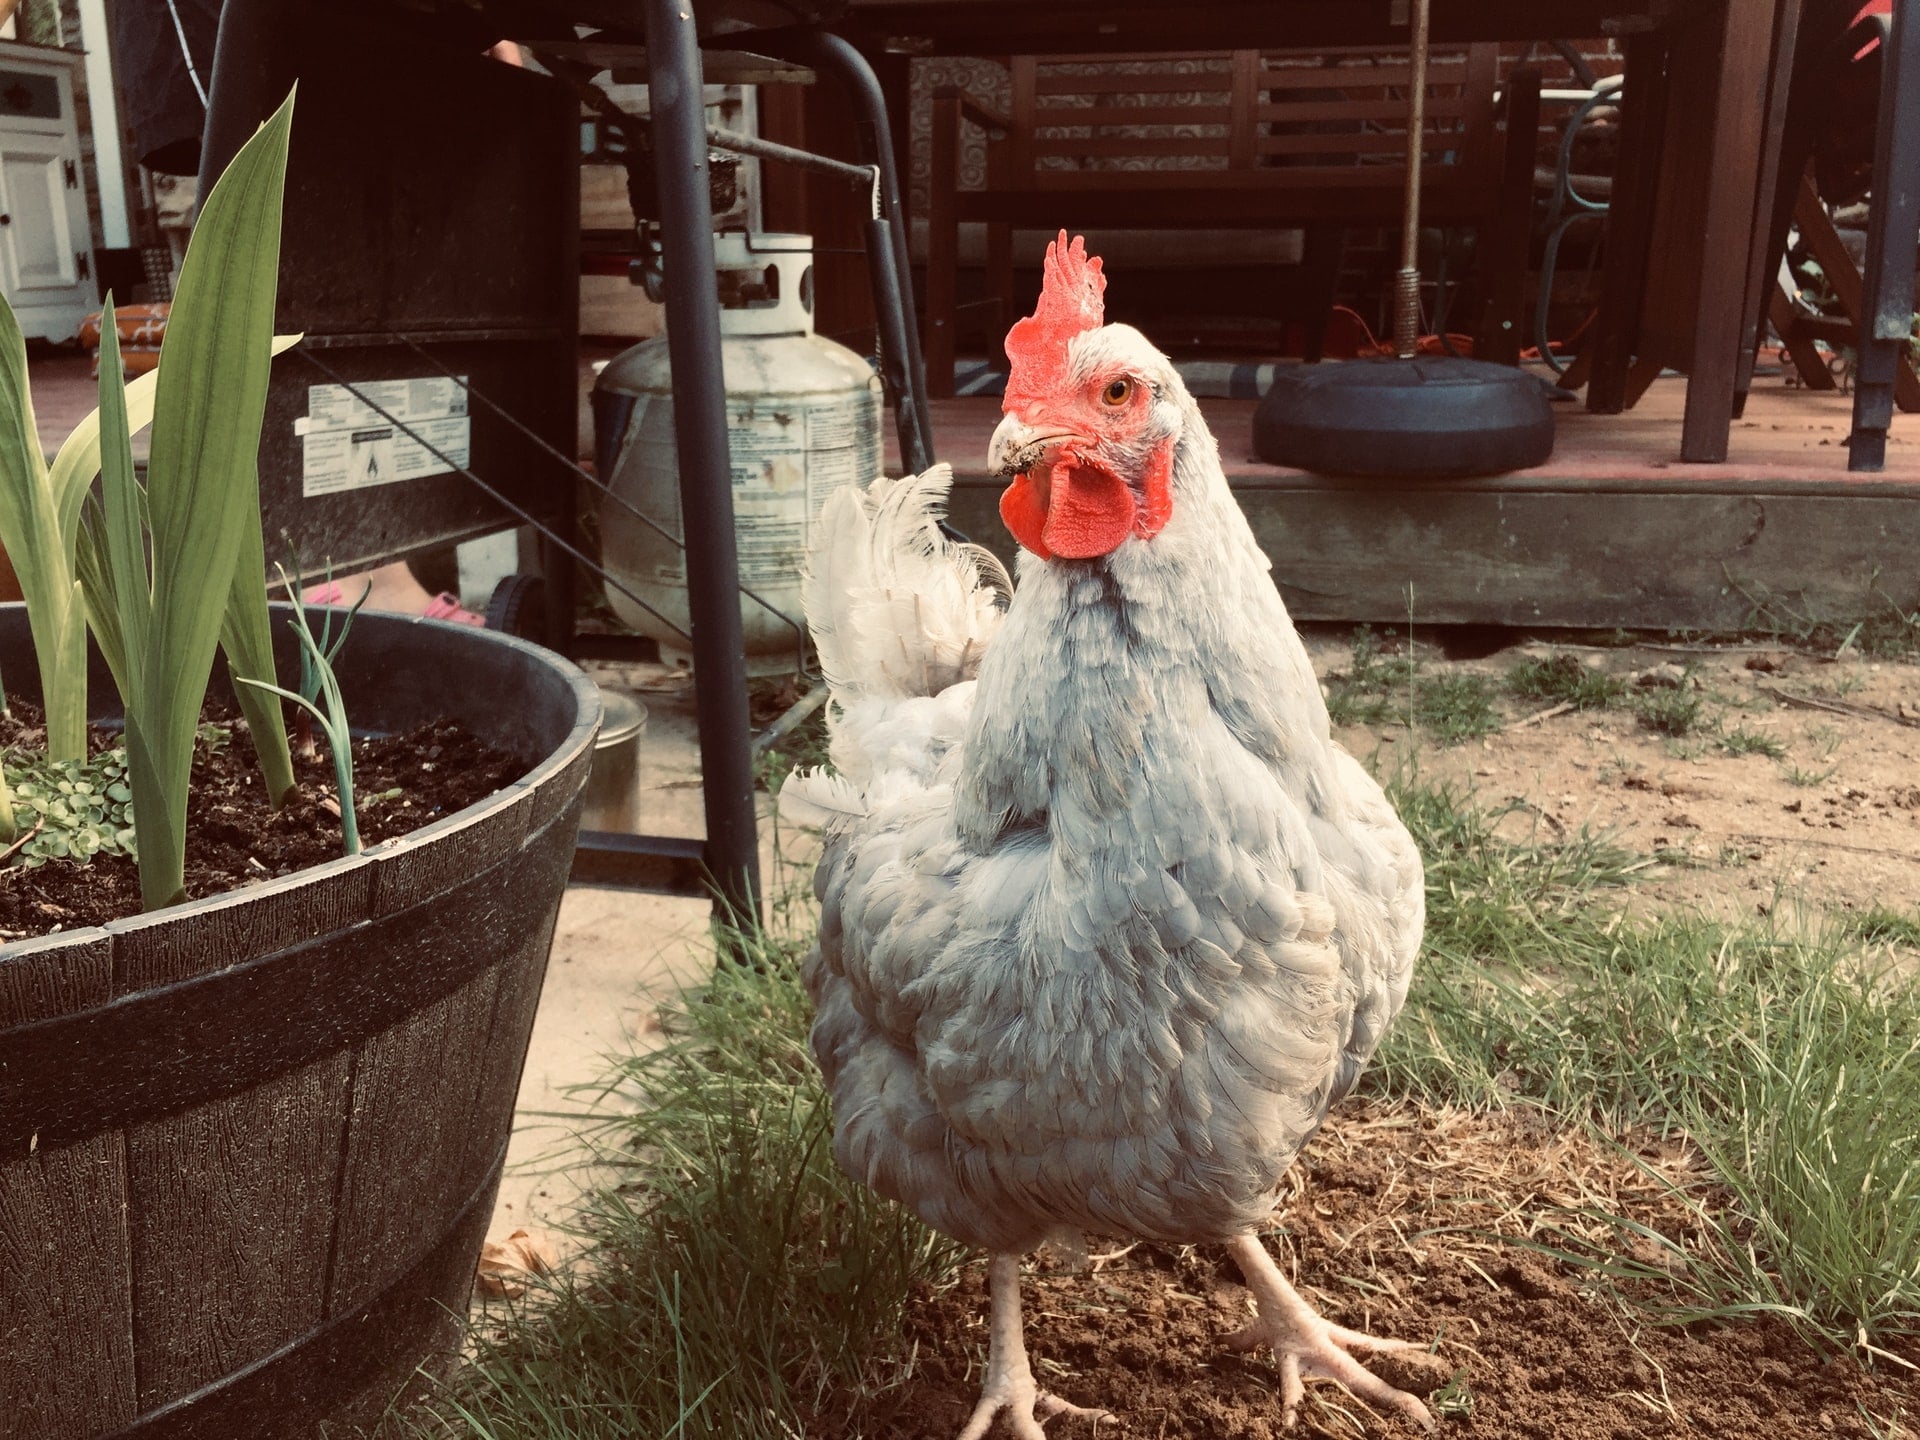 A grey chicken stood in a garden